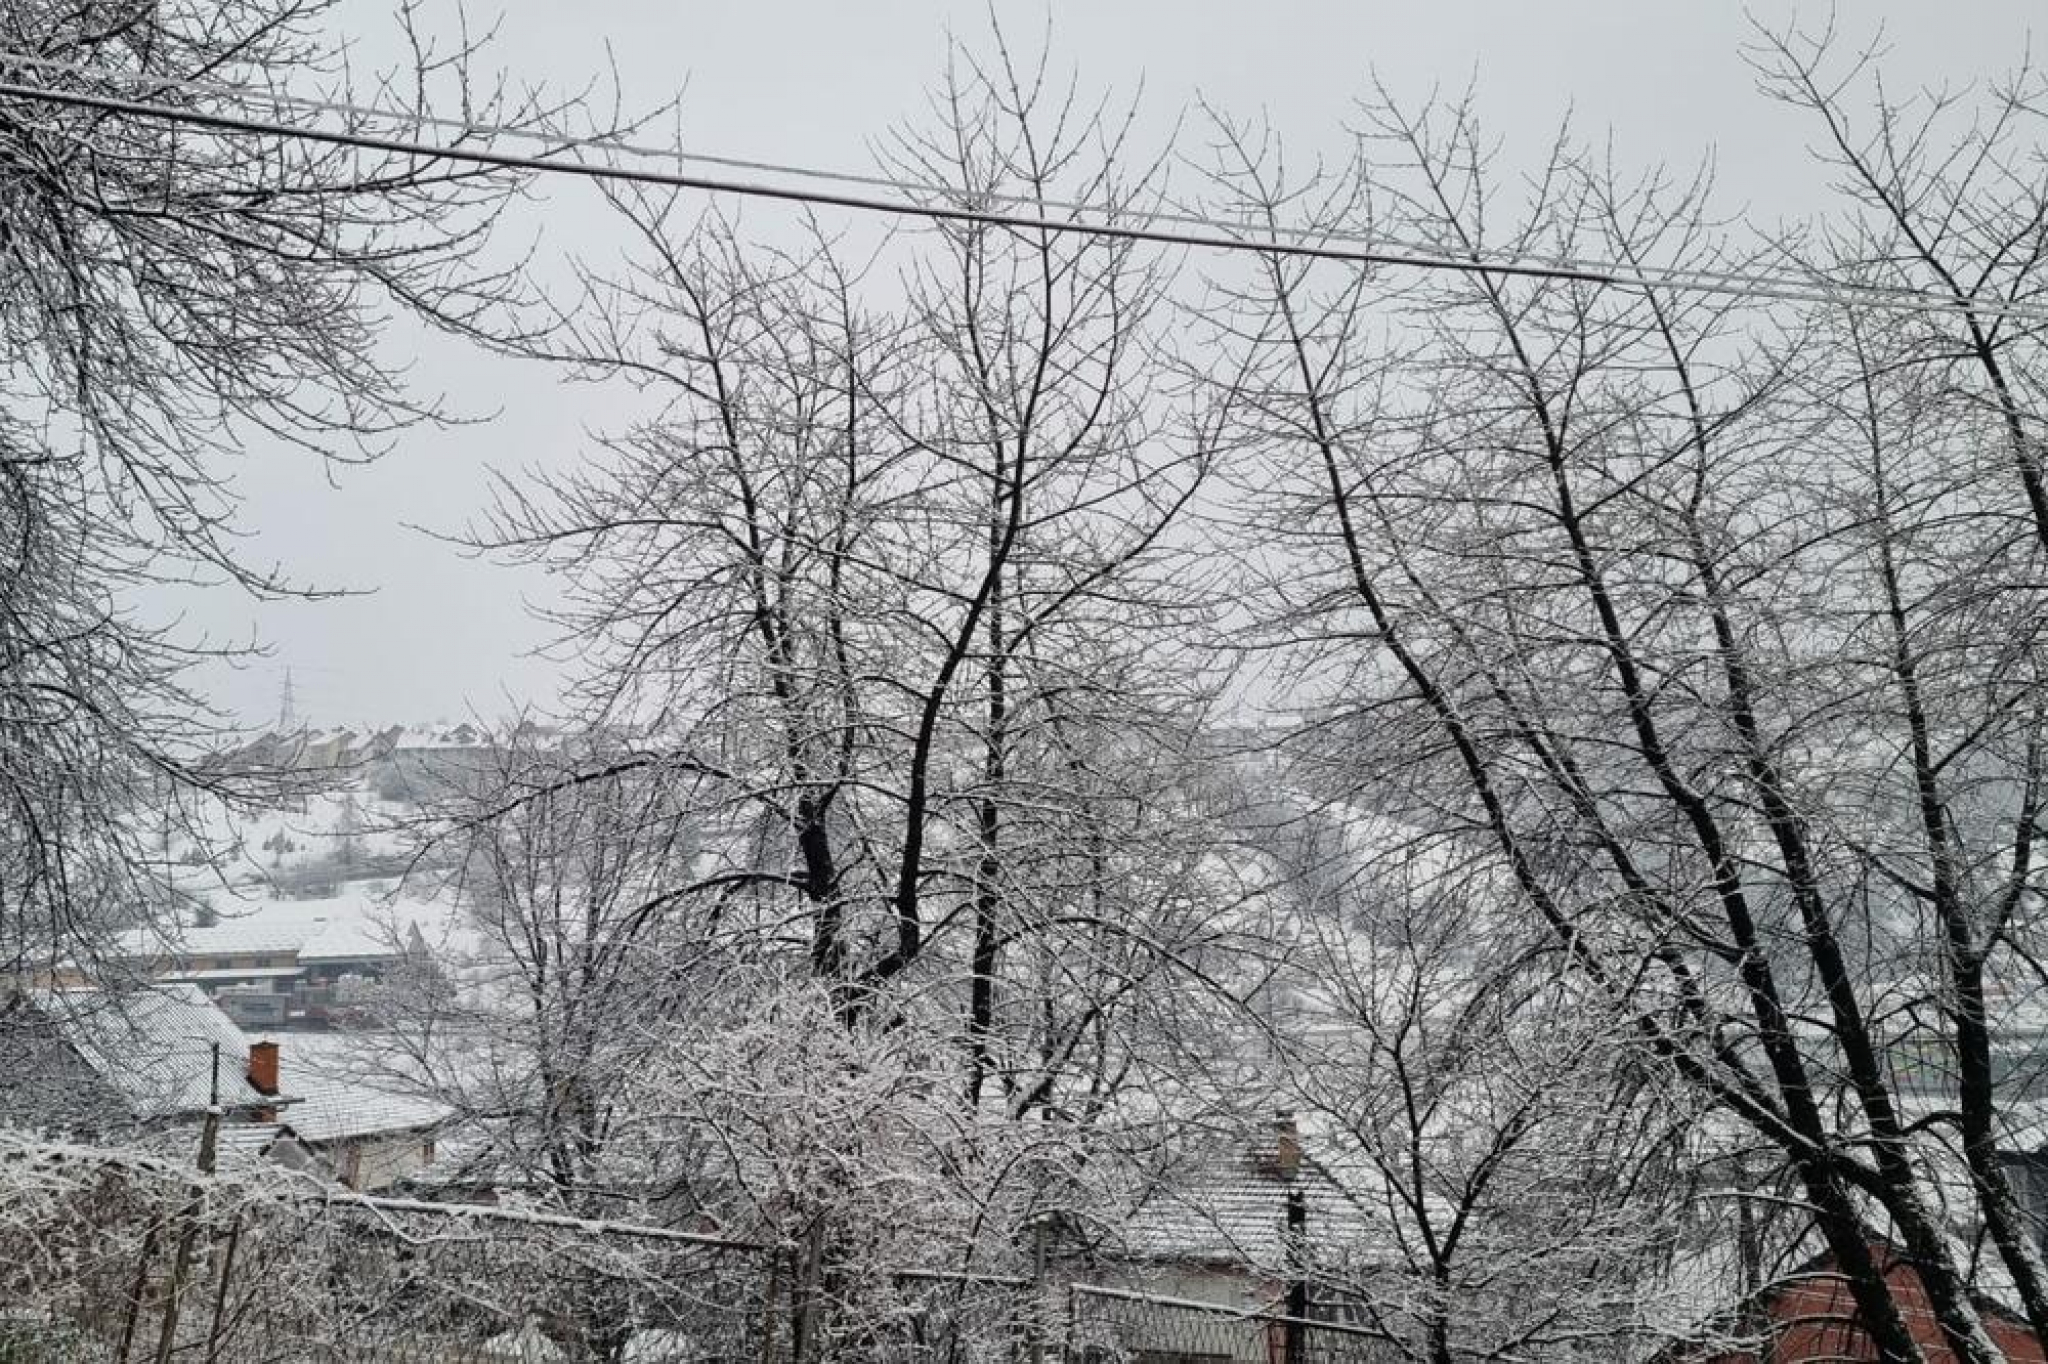 VREME SE MENJA PREKO NOĆI Đorđe Đurić najavio ogroman pad temperature i otkrio kad će pasti sneg!